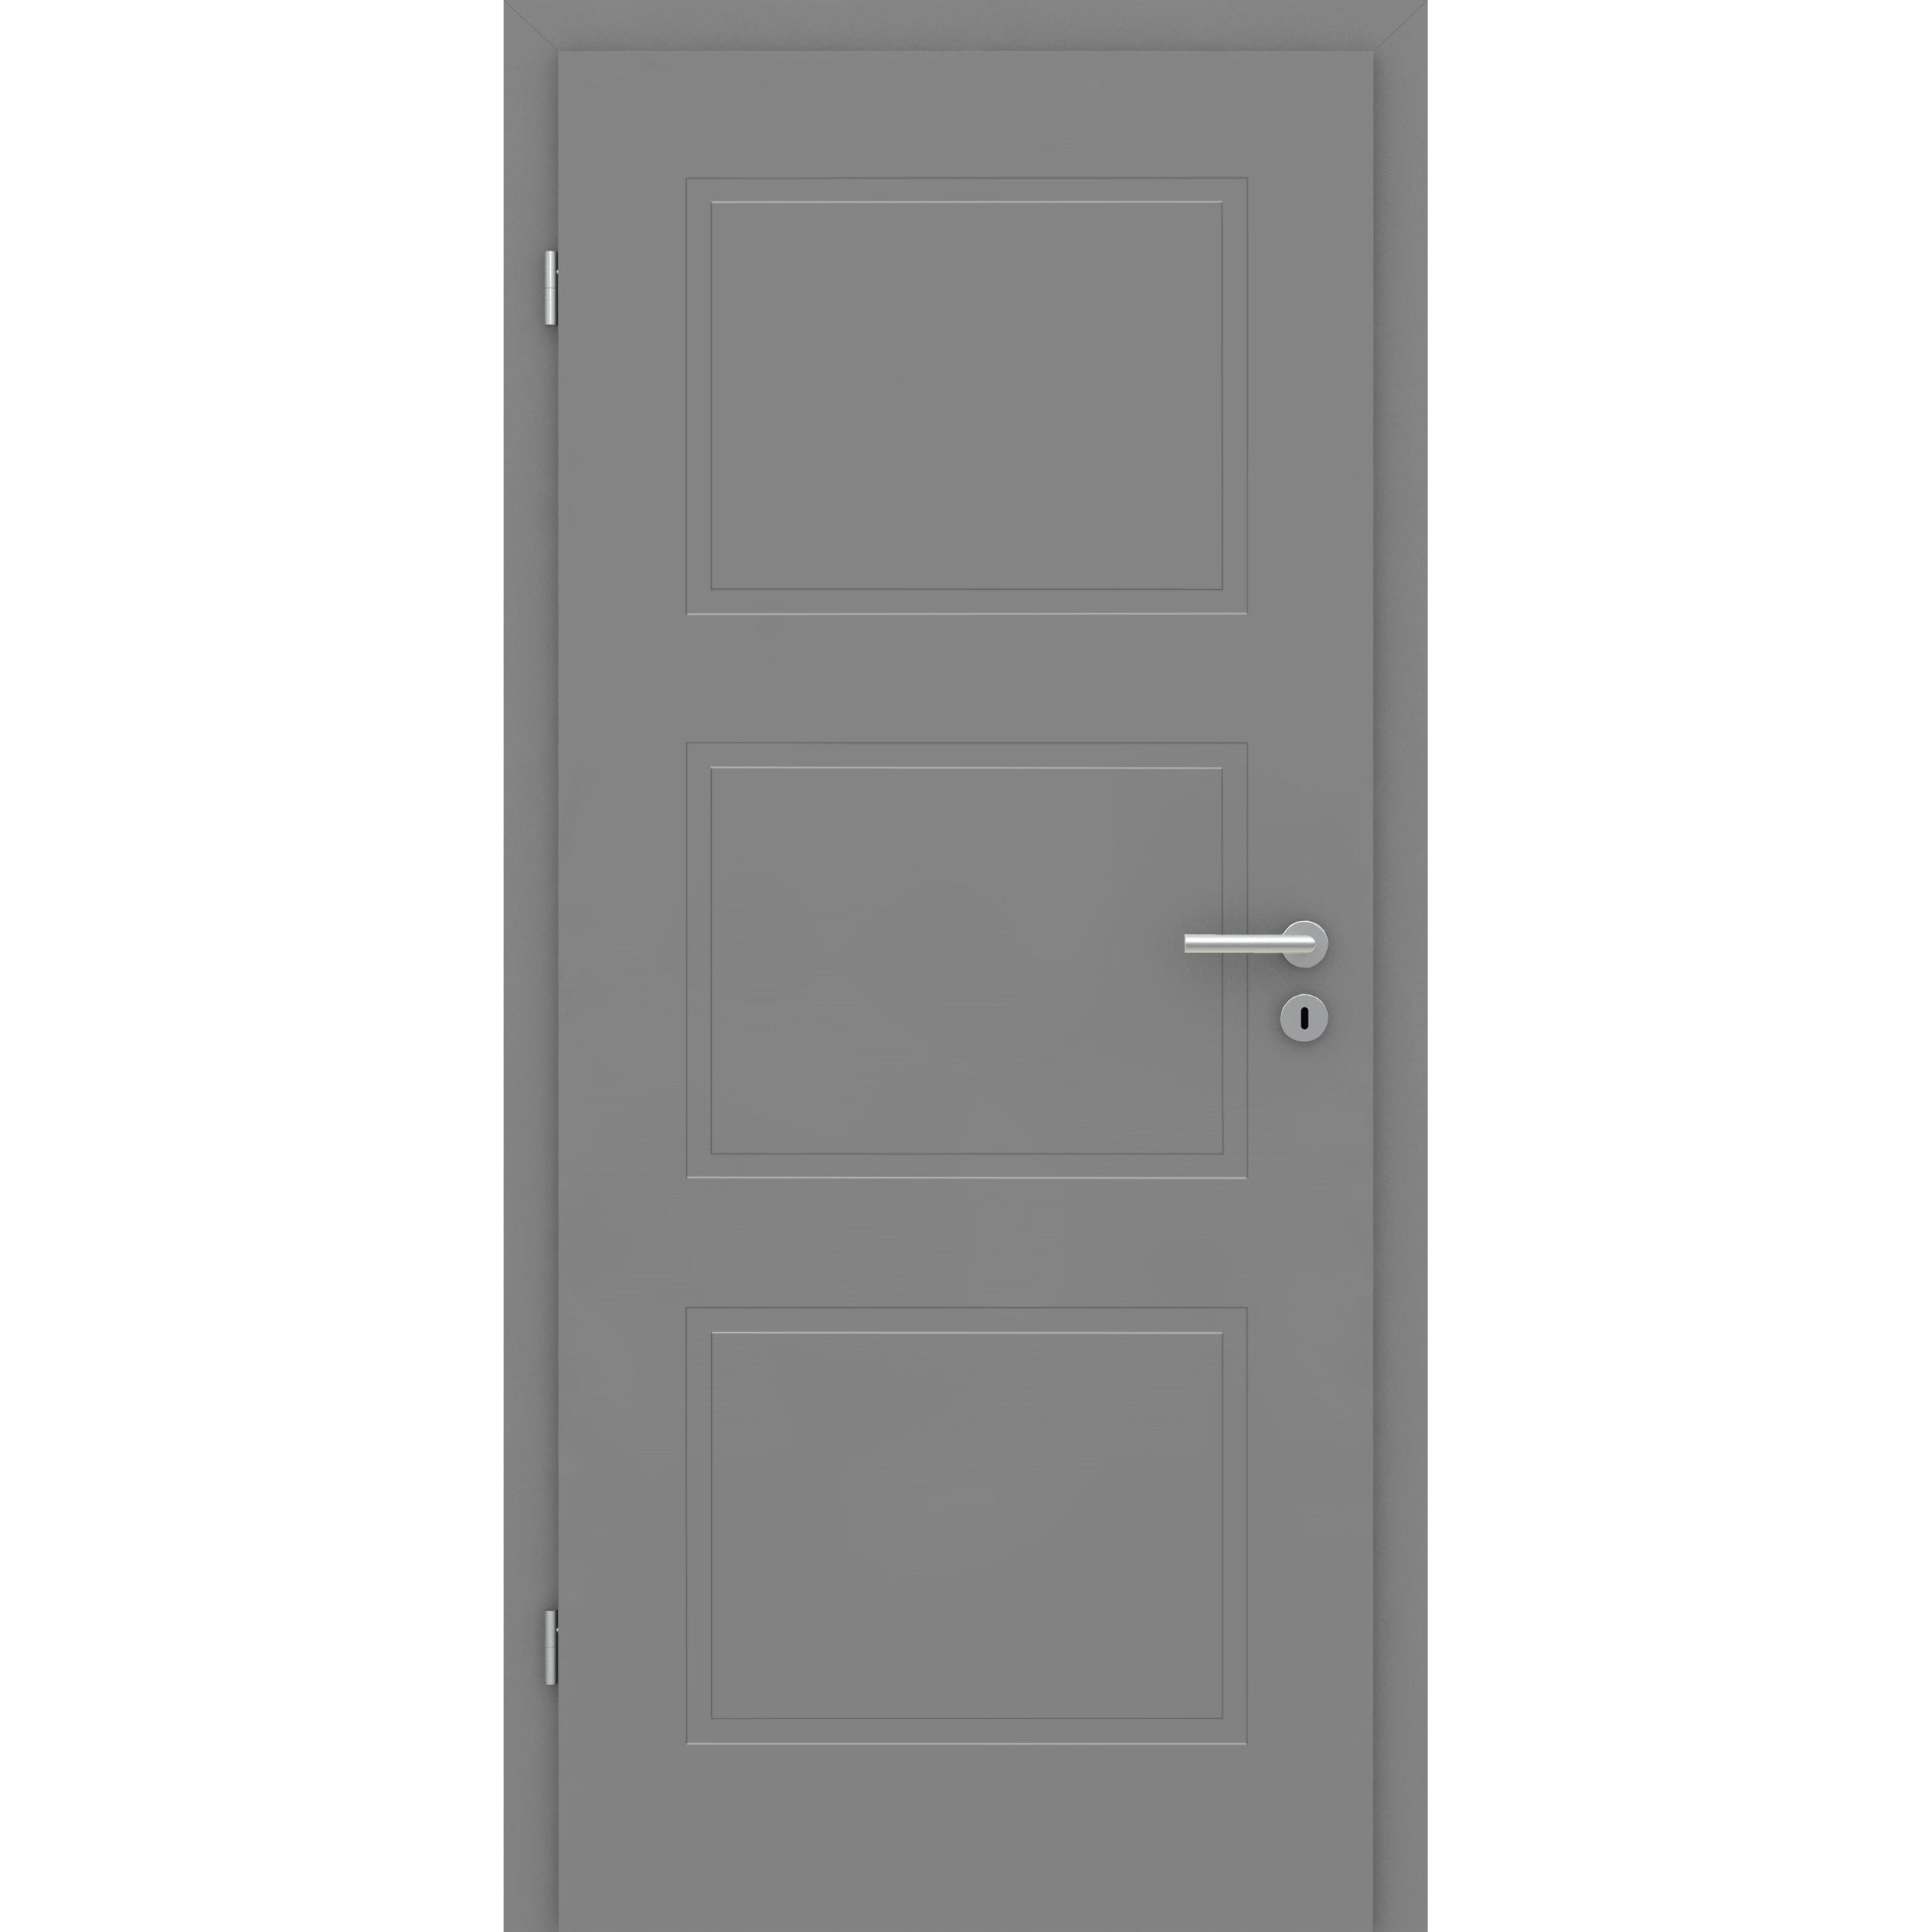 Wohnungseingangstür mit Zarge grau 3 Kassetten Designkante SK2 / KK3 - Modell Stiltür M37